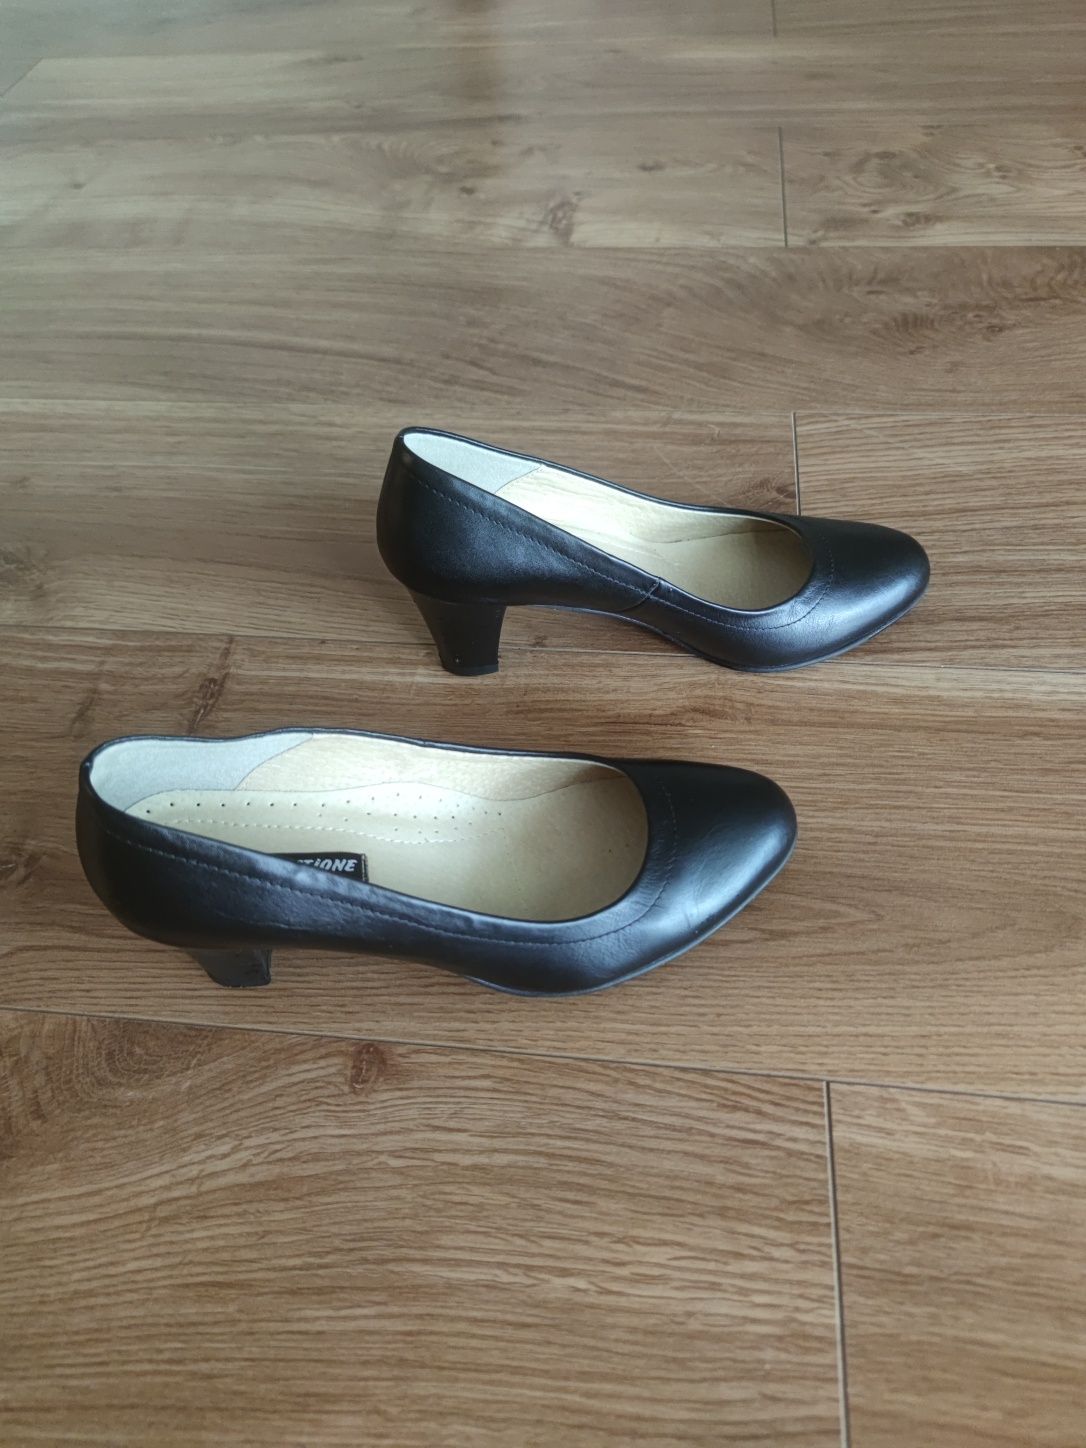 Pantofi Ema Colectione de dama, eleganti, stewardesa, cu toc 5 cm